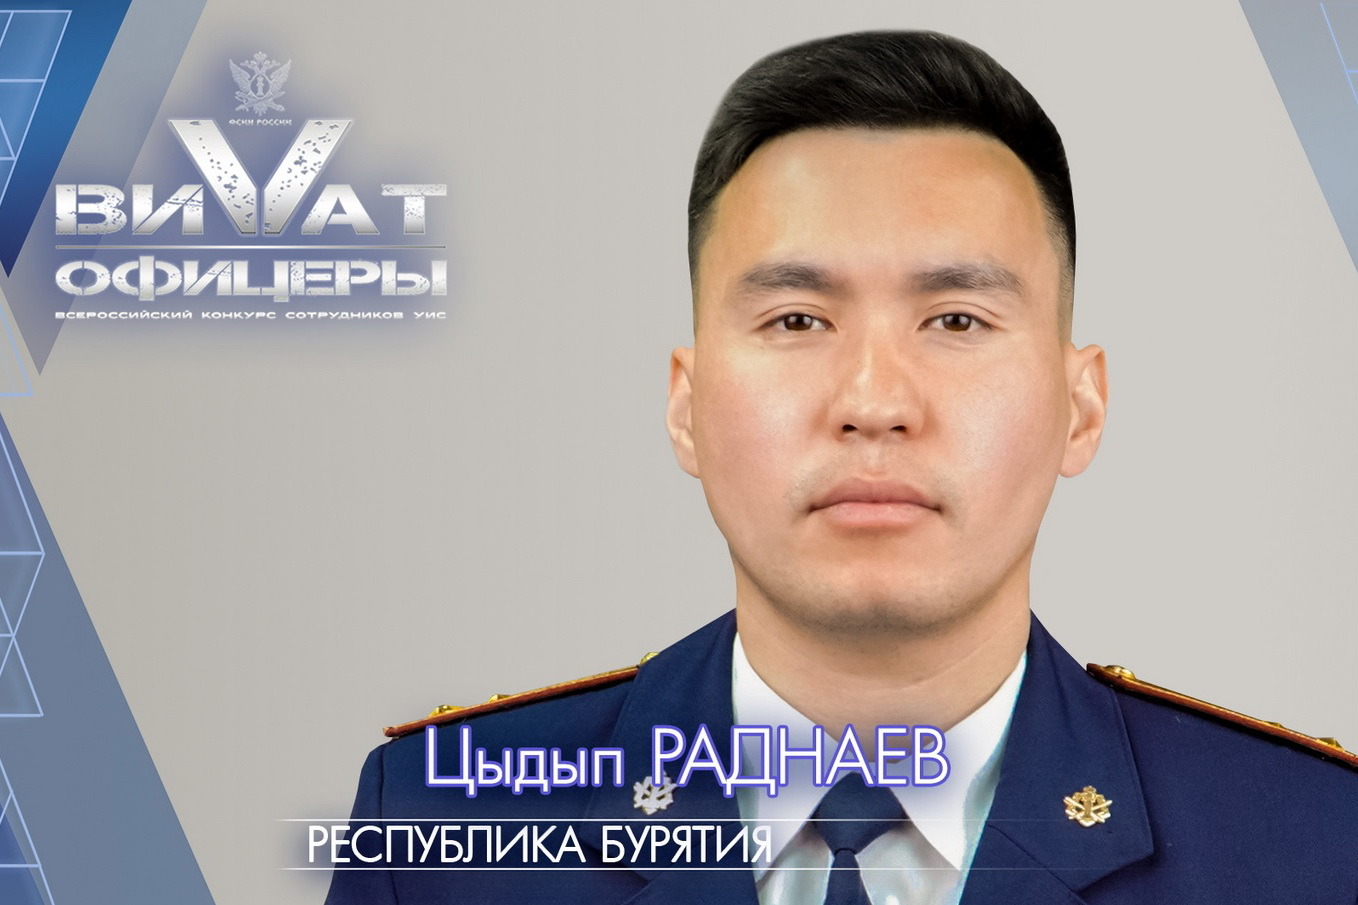 Сотрудник УФСИН Бурятии участвует во Всероссийском конкурсе «Виват, офицеры»